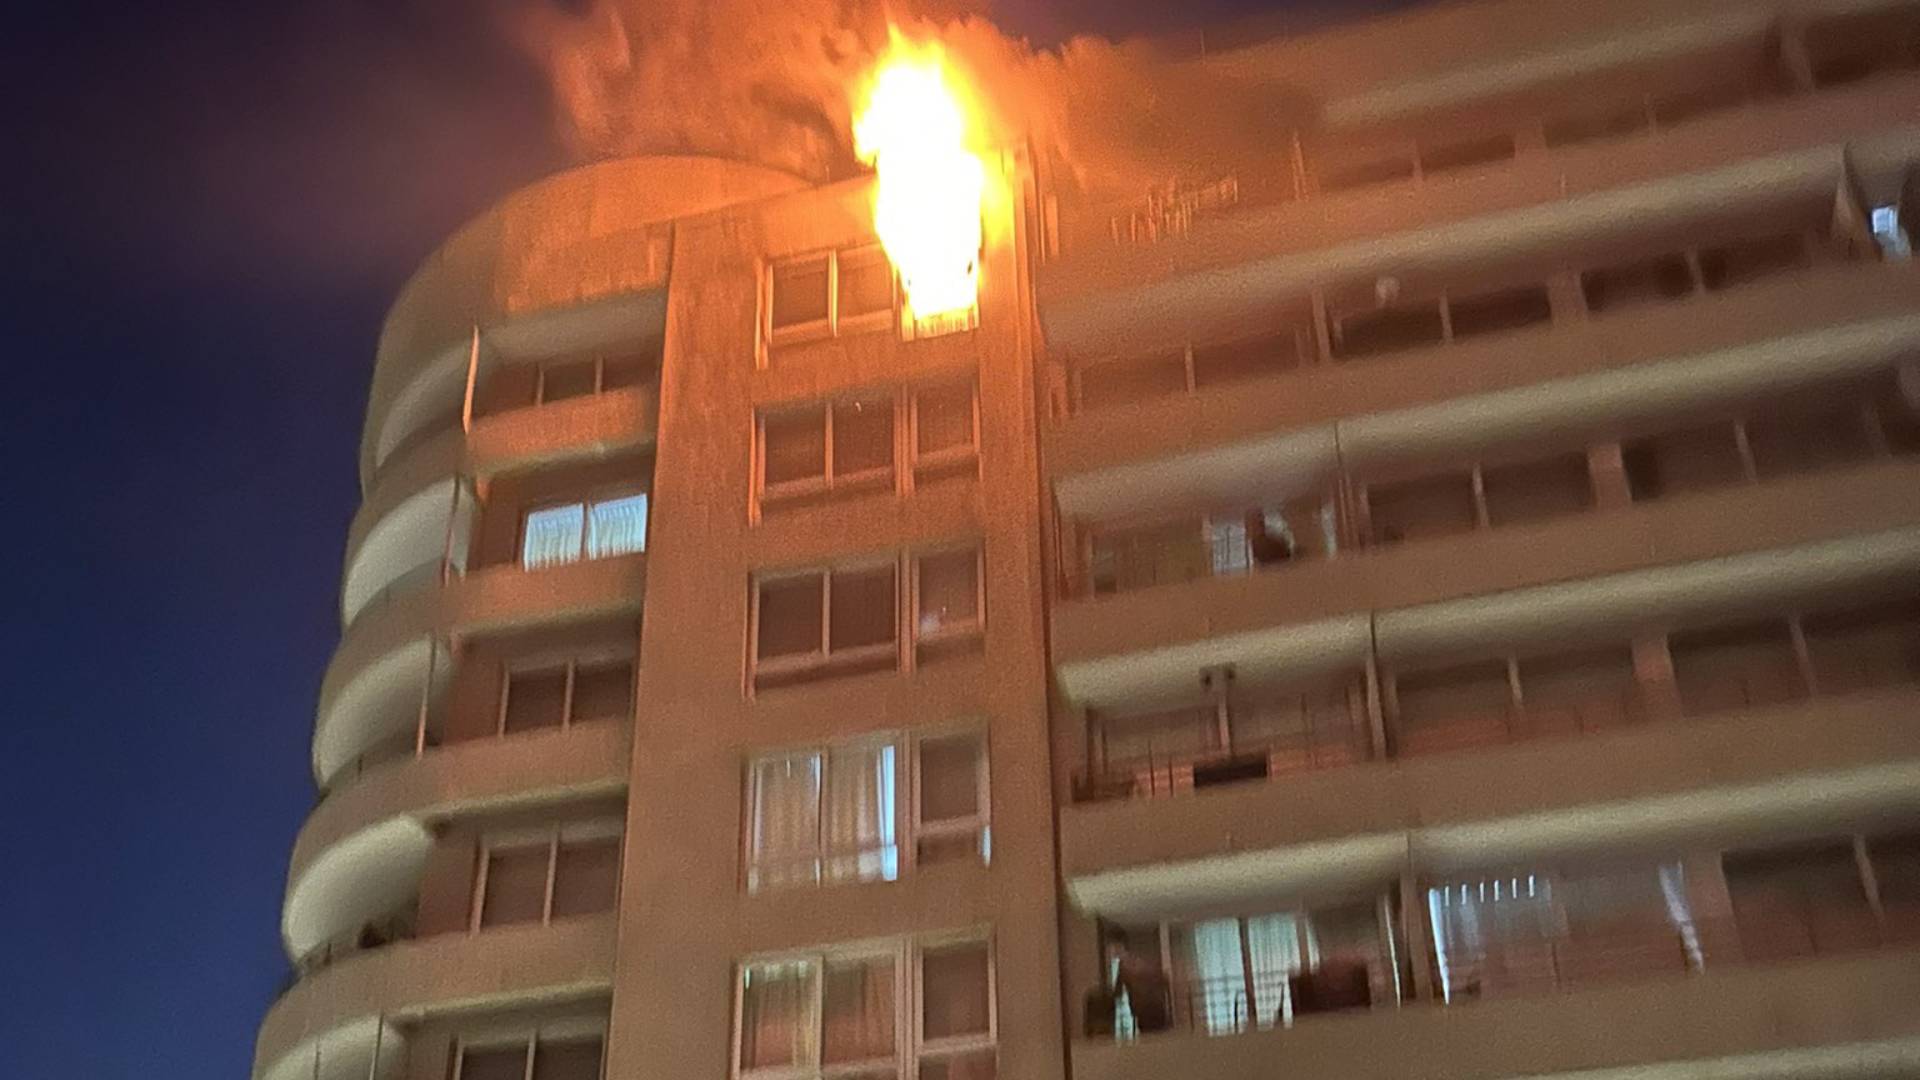 Incendio en piso 16 obligó a evacuar edificio en Santiago